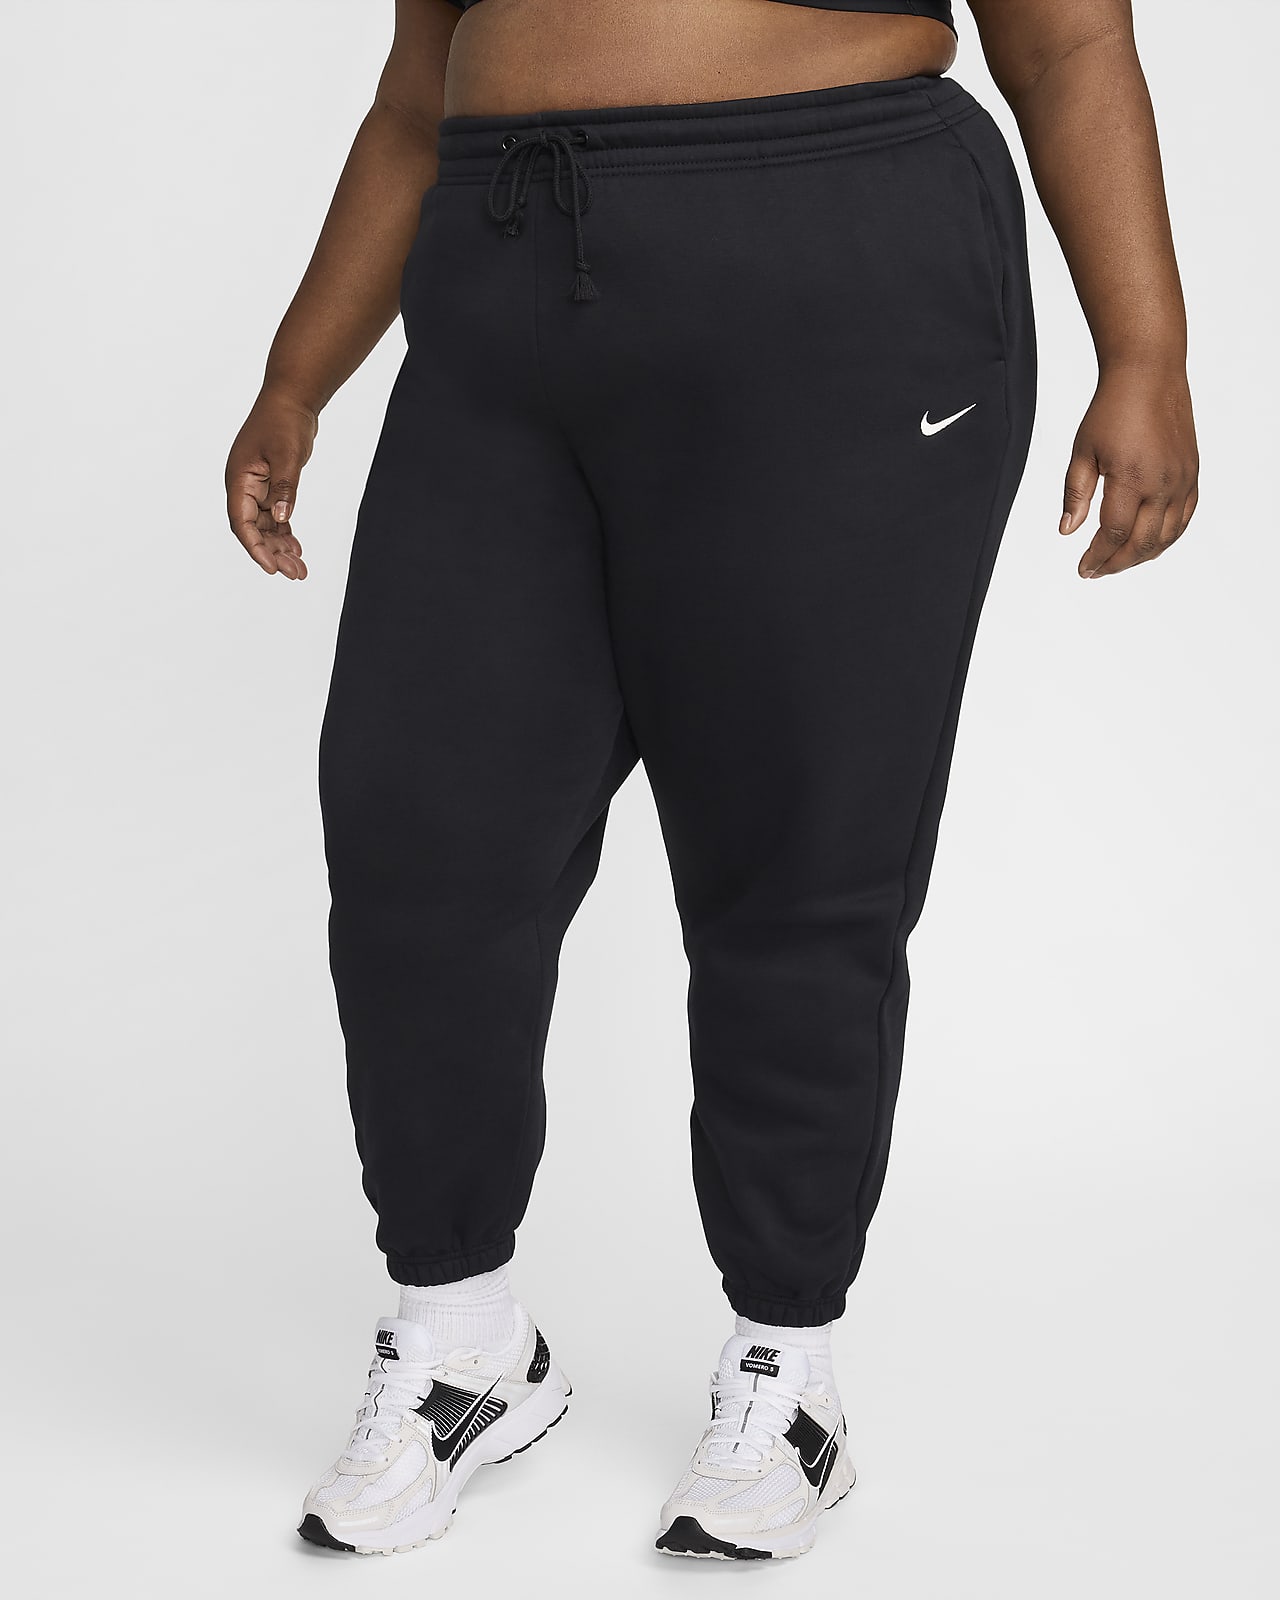 Nike Sportswear Phoenix Fleece Women's High-Waisted Oversized Tracksuit Bottoms (Plus Size)